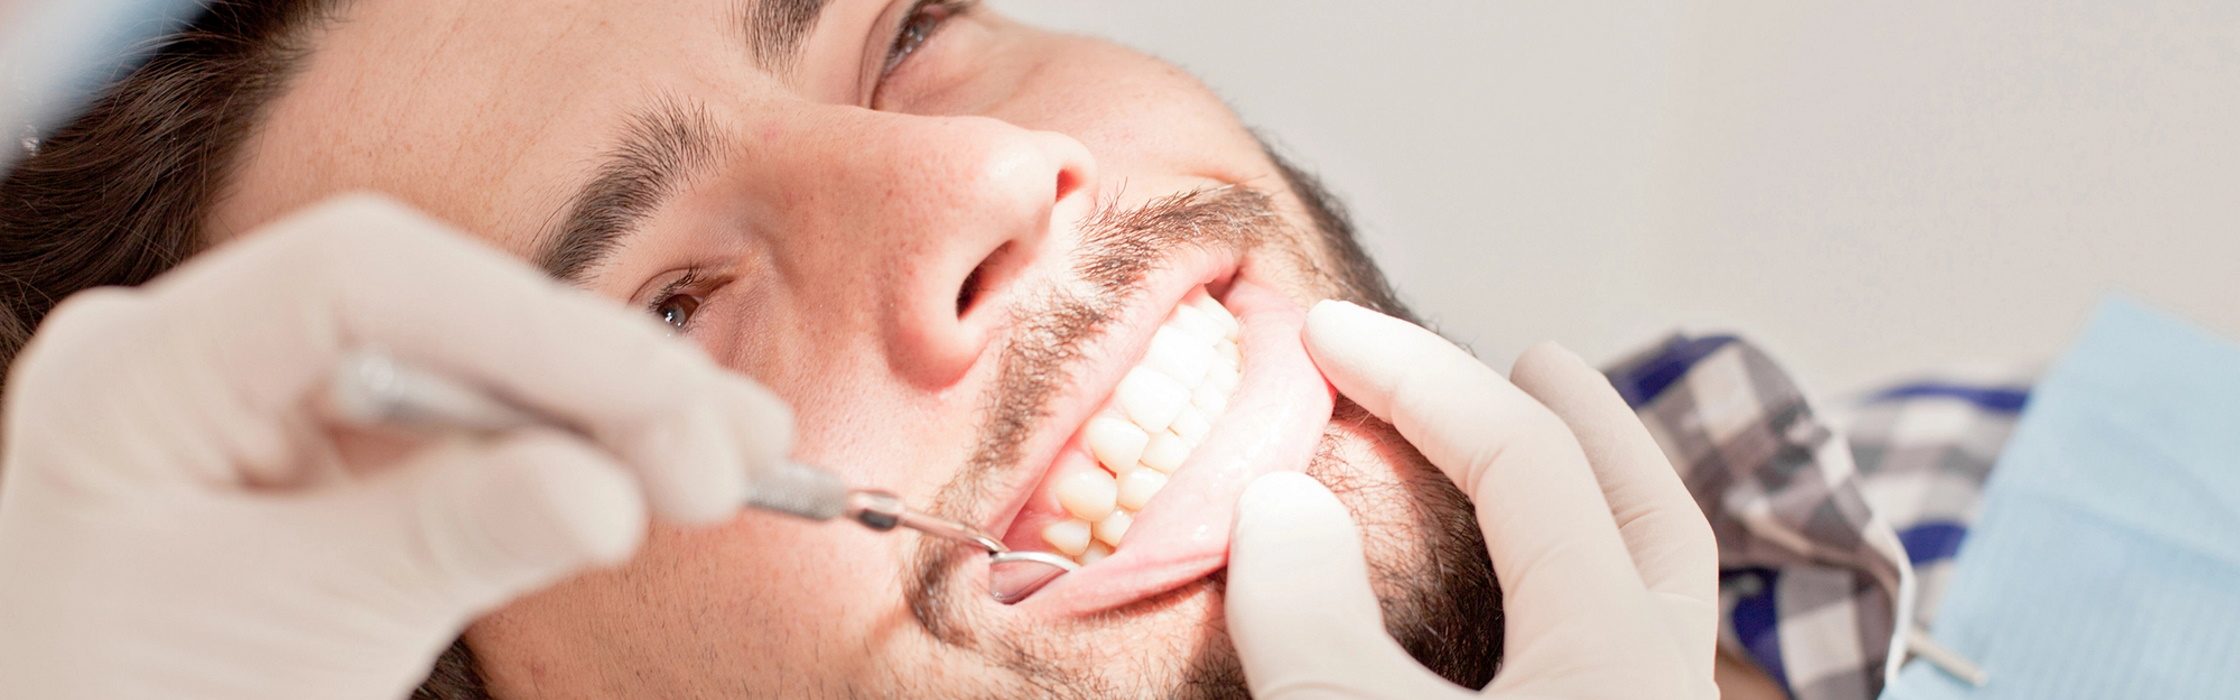 Sekundärkaries: Karies unter einer Zahnkrone oder Füllung